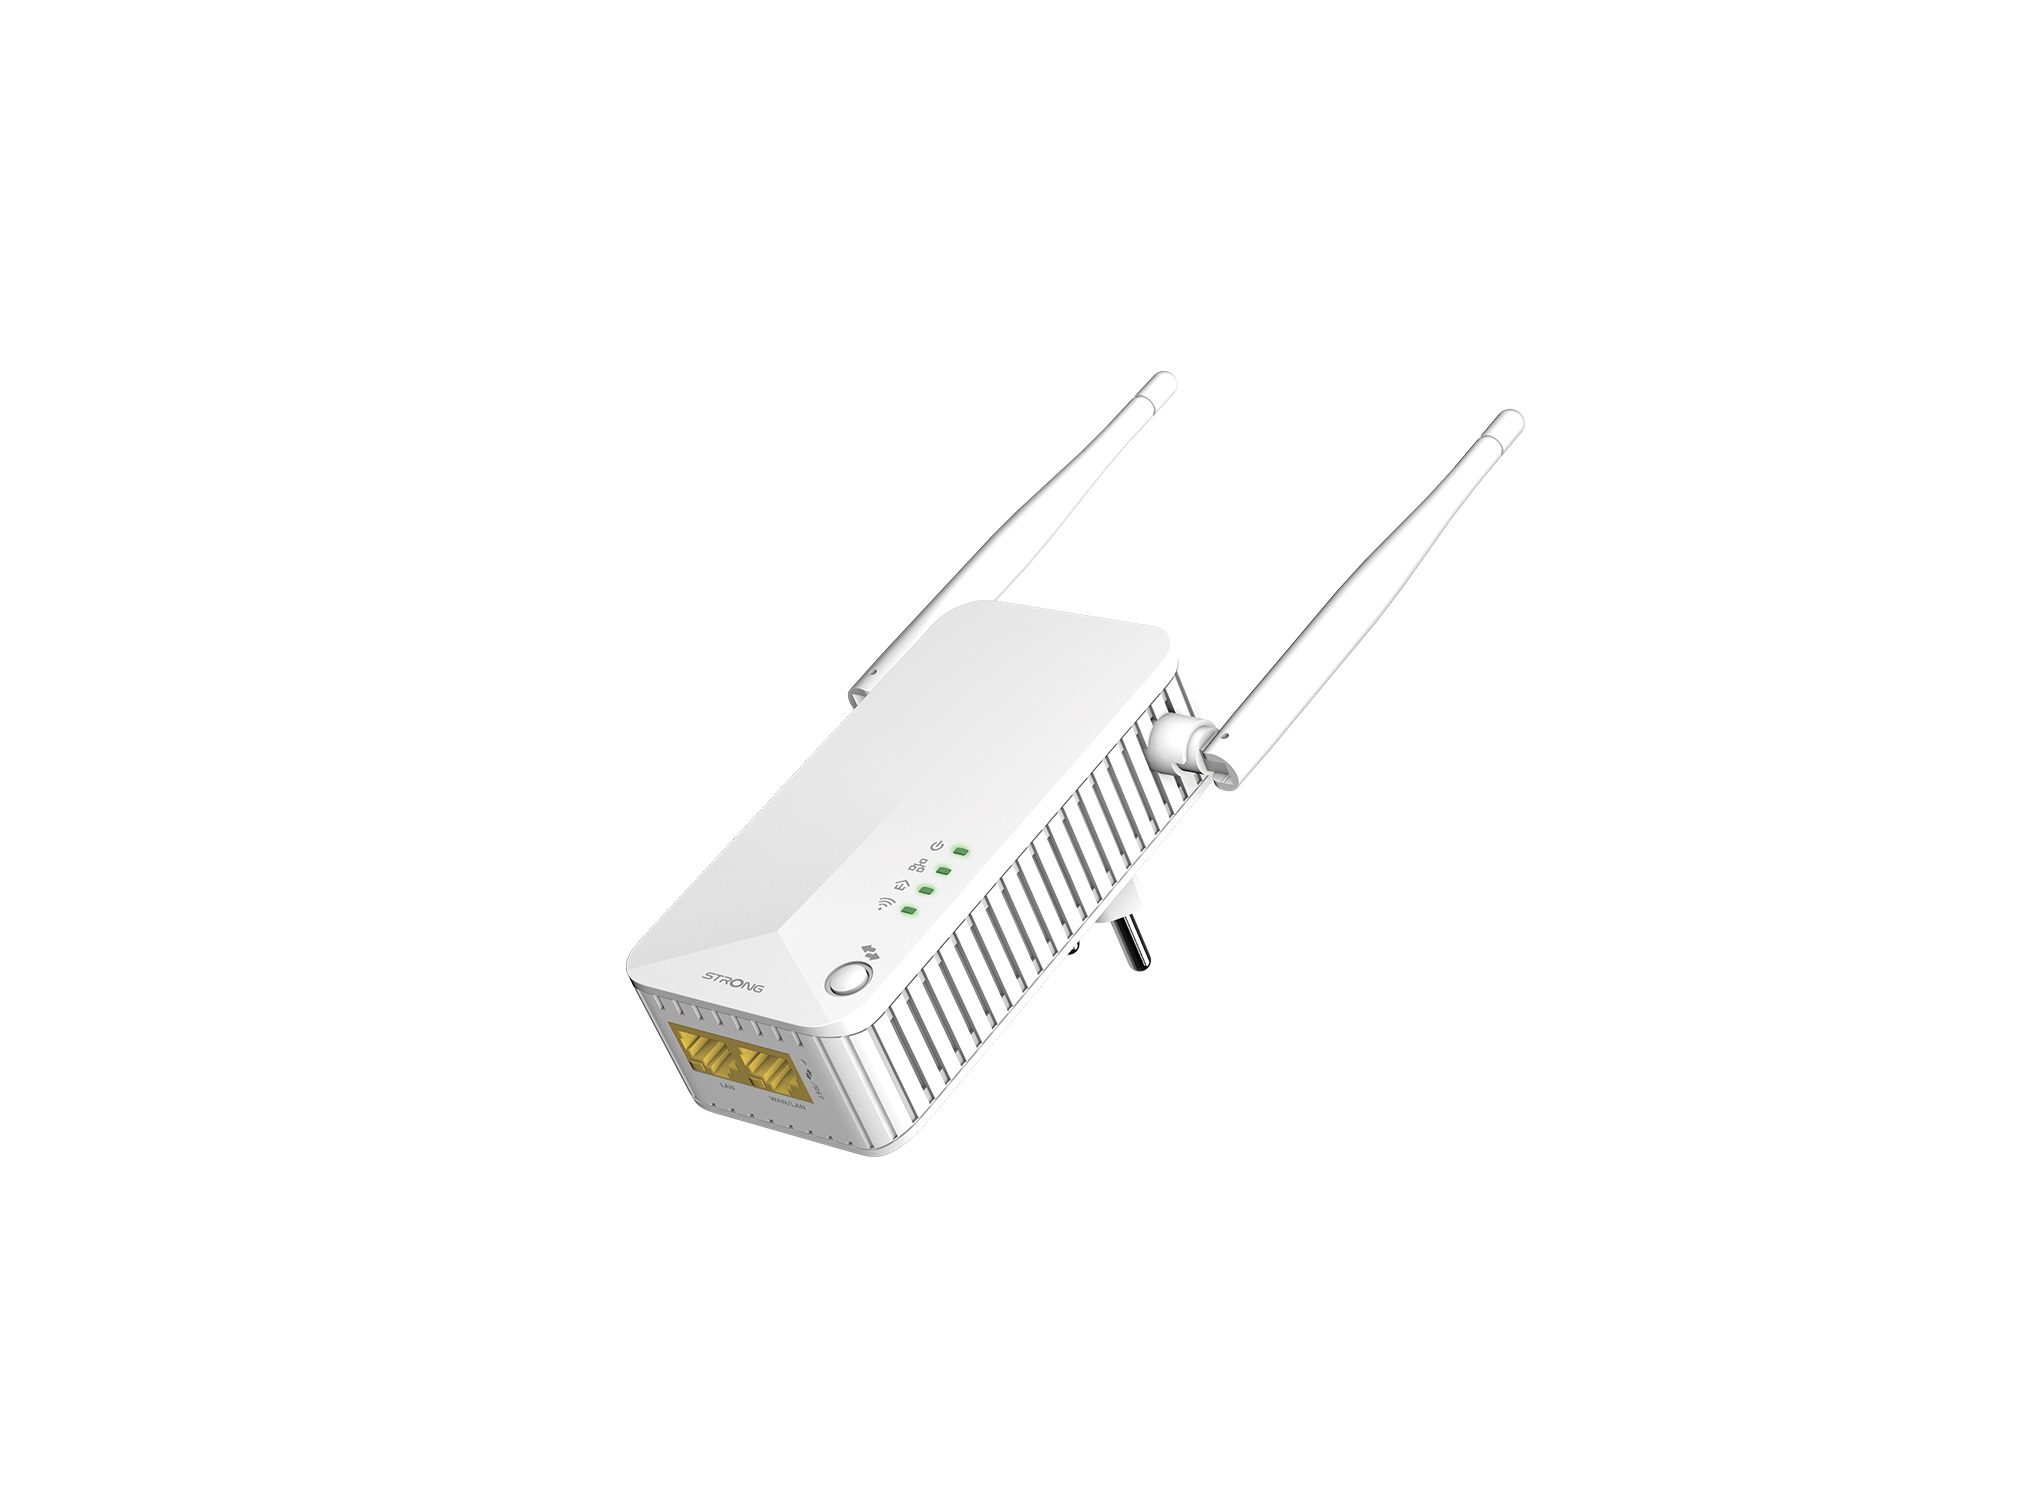 WLAN 600 kabellos Set Duo STRONG Powerline EU LAN kabelgebunden, Mbit/s Powerline 600